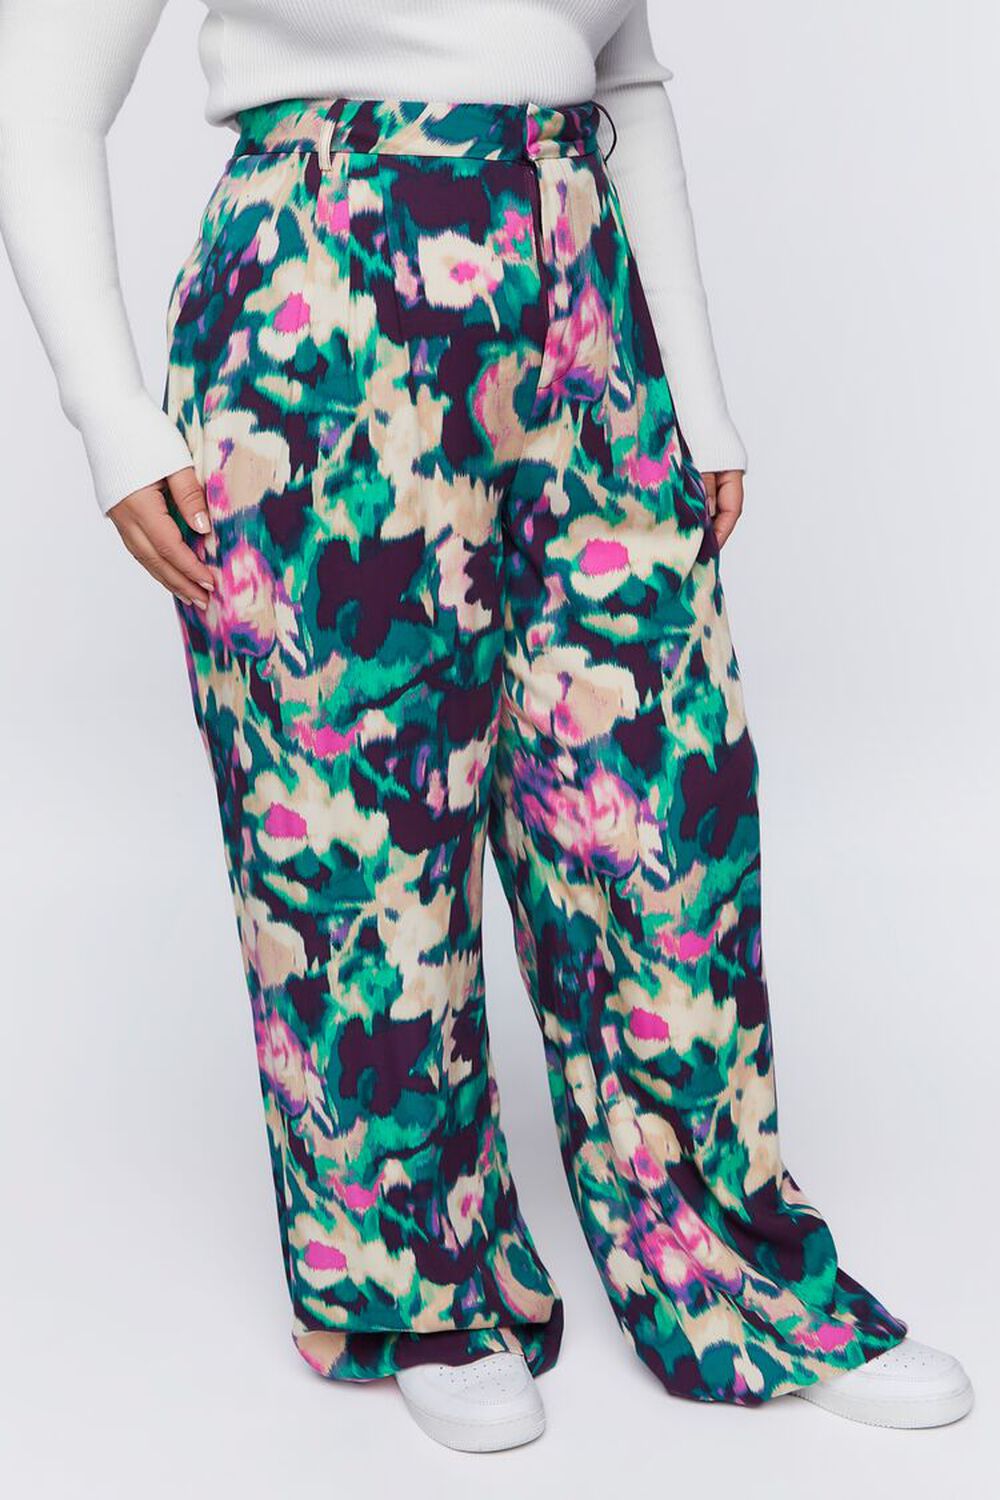 PLUM/MULTI Plus Size Floral Print Wide-Leg Pants, image 3